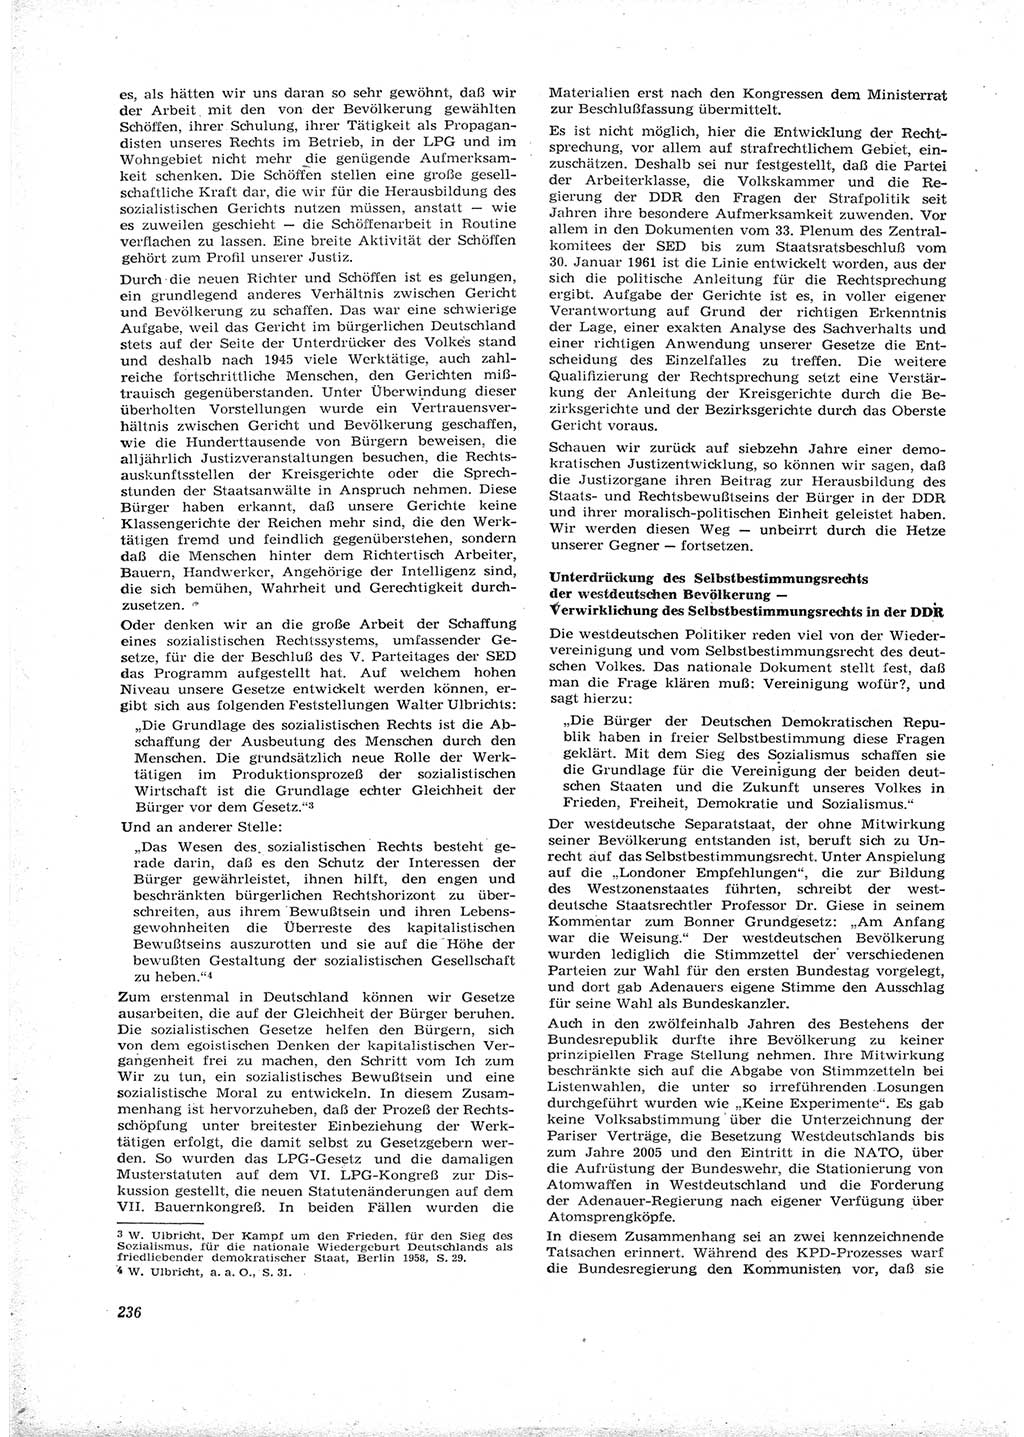 Neue Justiz (NJ), Zeitschrift für Recht und Rechtswissenschaft [Deutsche Demokratische Republik (DDR)], 16. Jahrgang 1962, Seite 236 (NJ DDR 1962, S. 236)